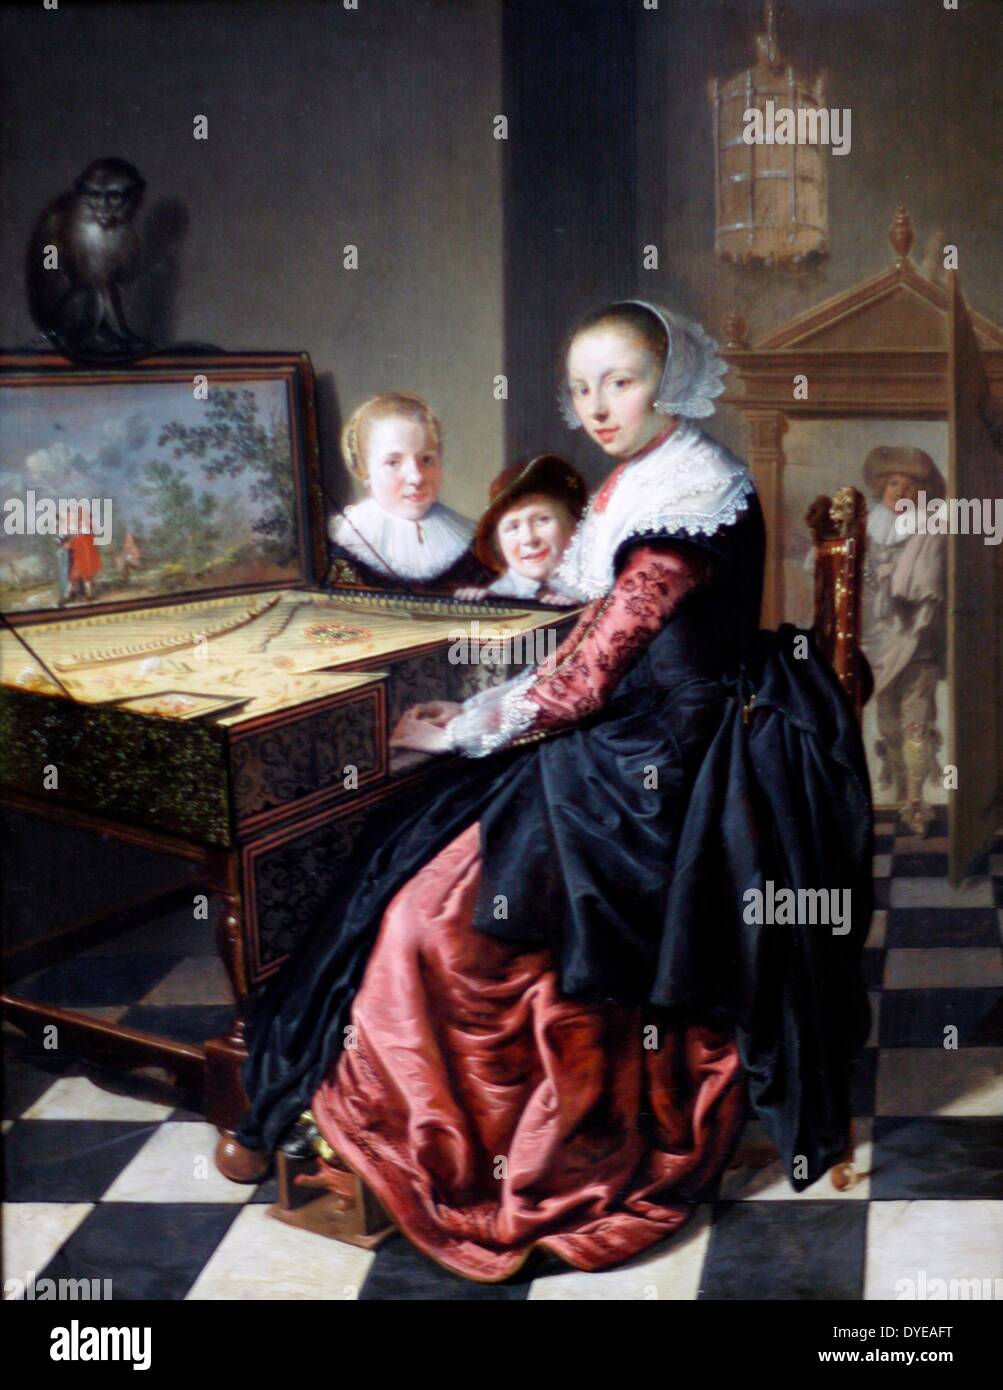 Frau an der jungfräulichen. Jan Miense Molenaer 1610-1668. Molenaer wurde aktiv von 1629. Er war verheiratet mit Judith Leyster, einem bekannten Maler, im Jahre 1636. Er verbrachte seine Zeit in Haarlem und Amsterdam und seine früheren Werke sind stark von Frans Hals beeinflusst. Stockfoto